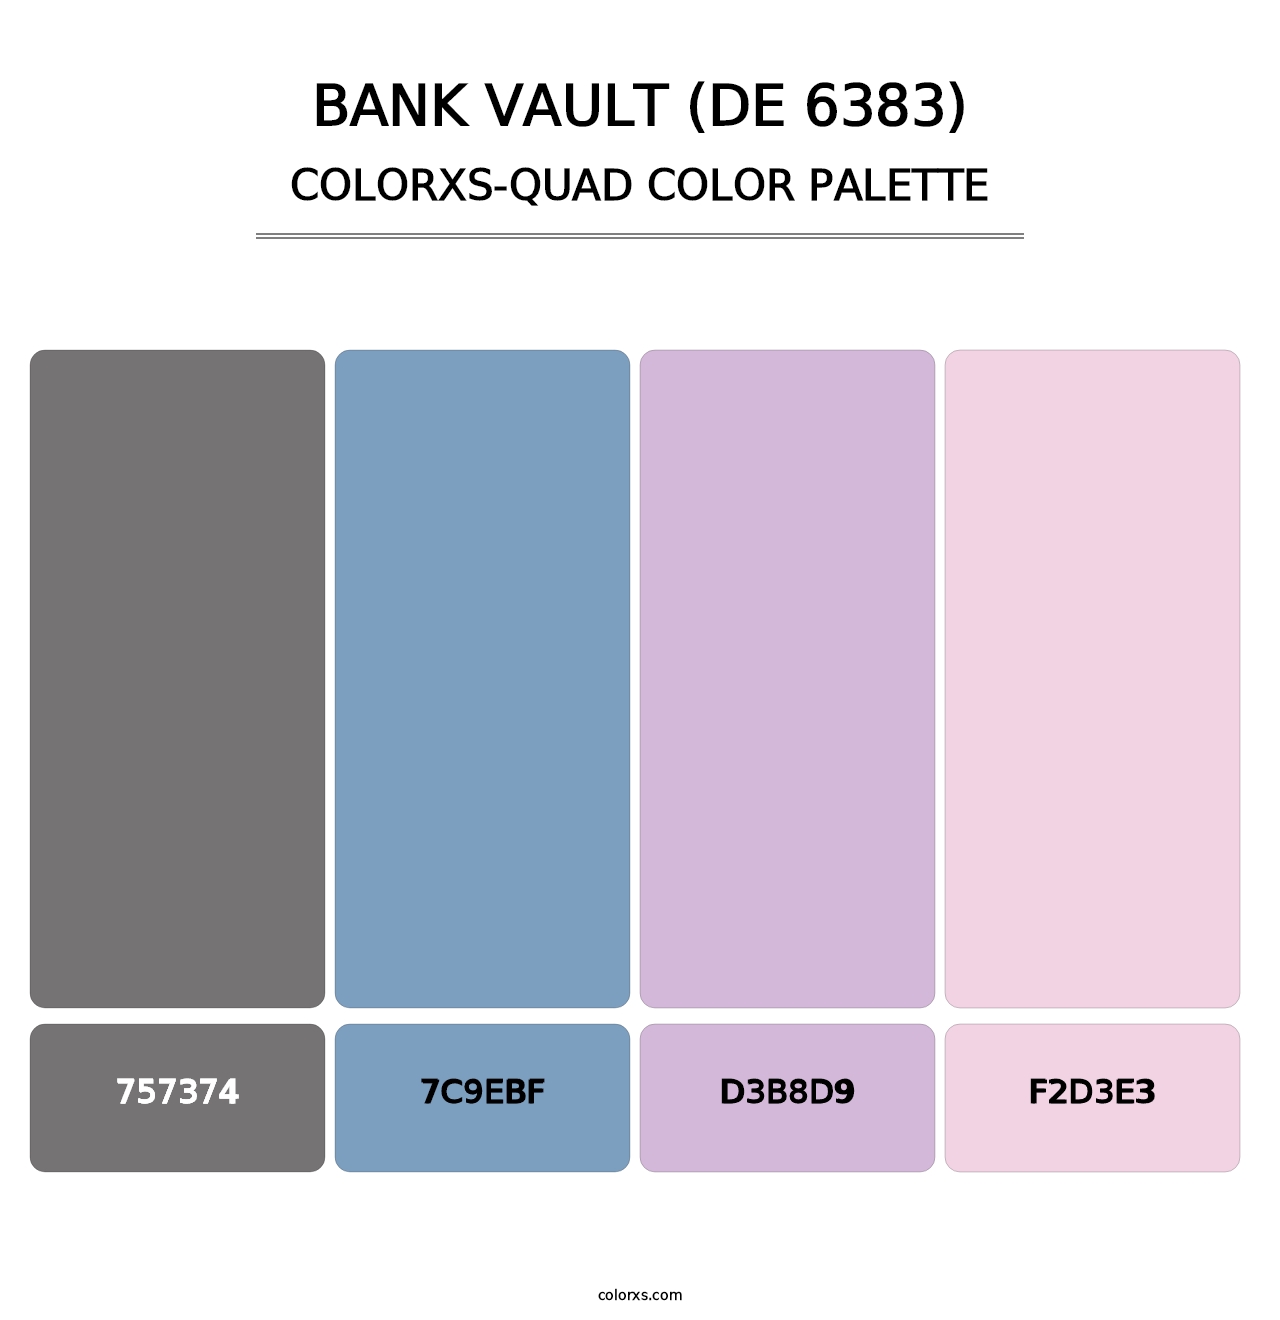 Bank Vault (DE 6383) - Colorxs Quad Palette